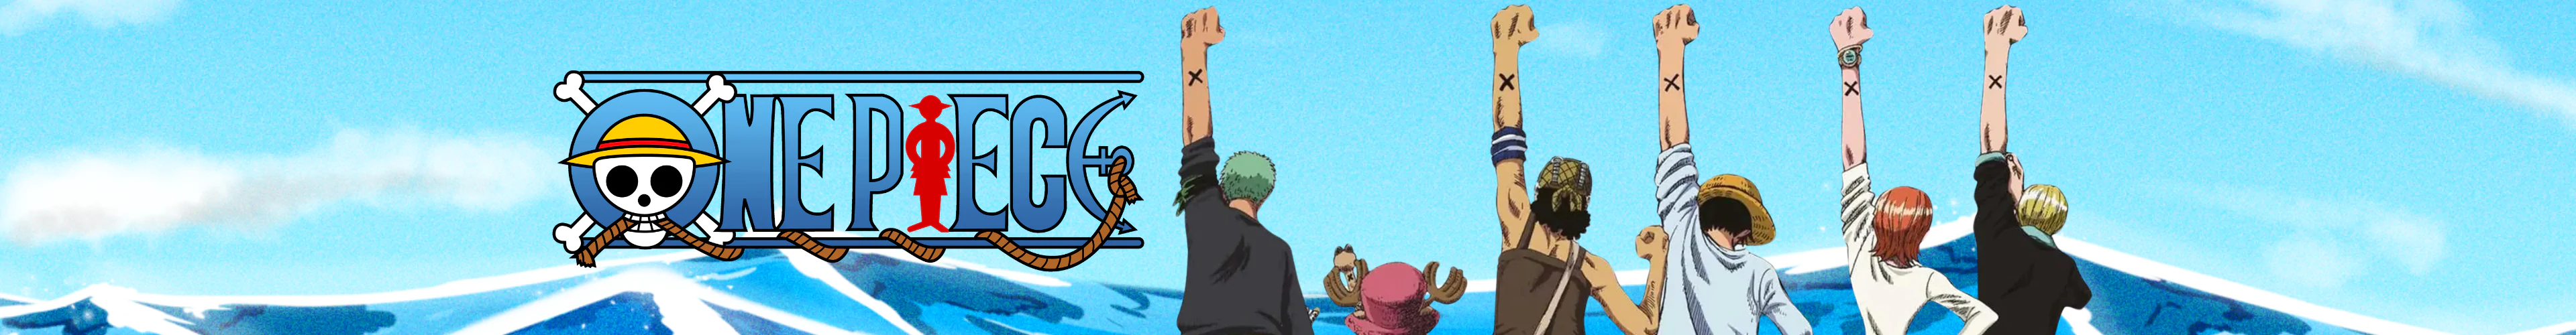 One Piece pins banner